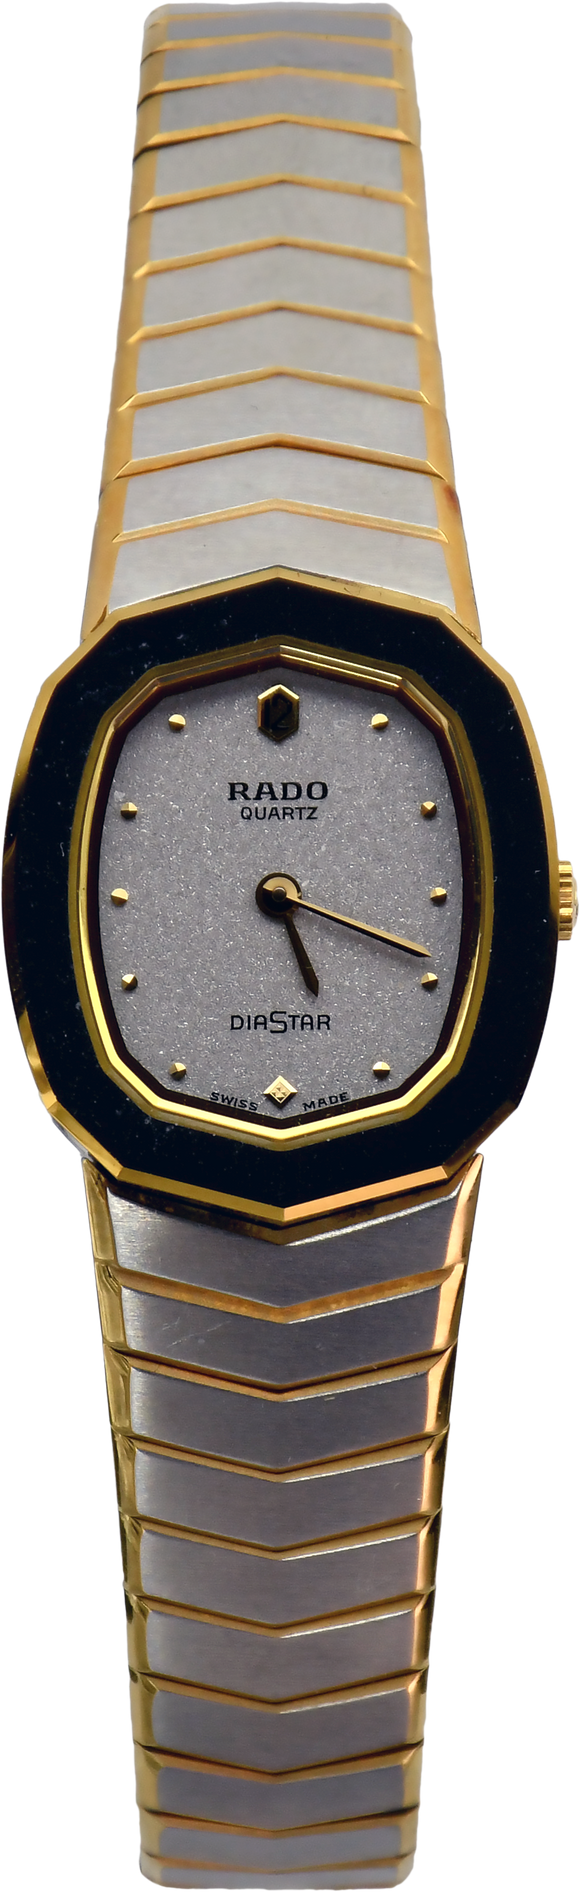 Rado DiaStar 153.0218.3 White - Parini's